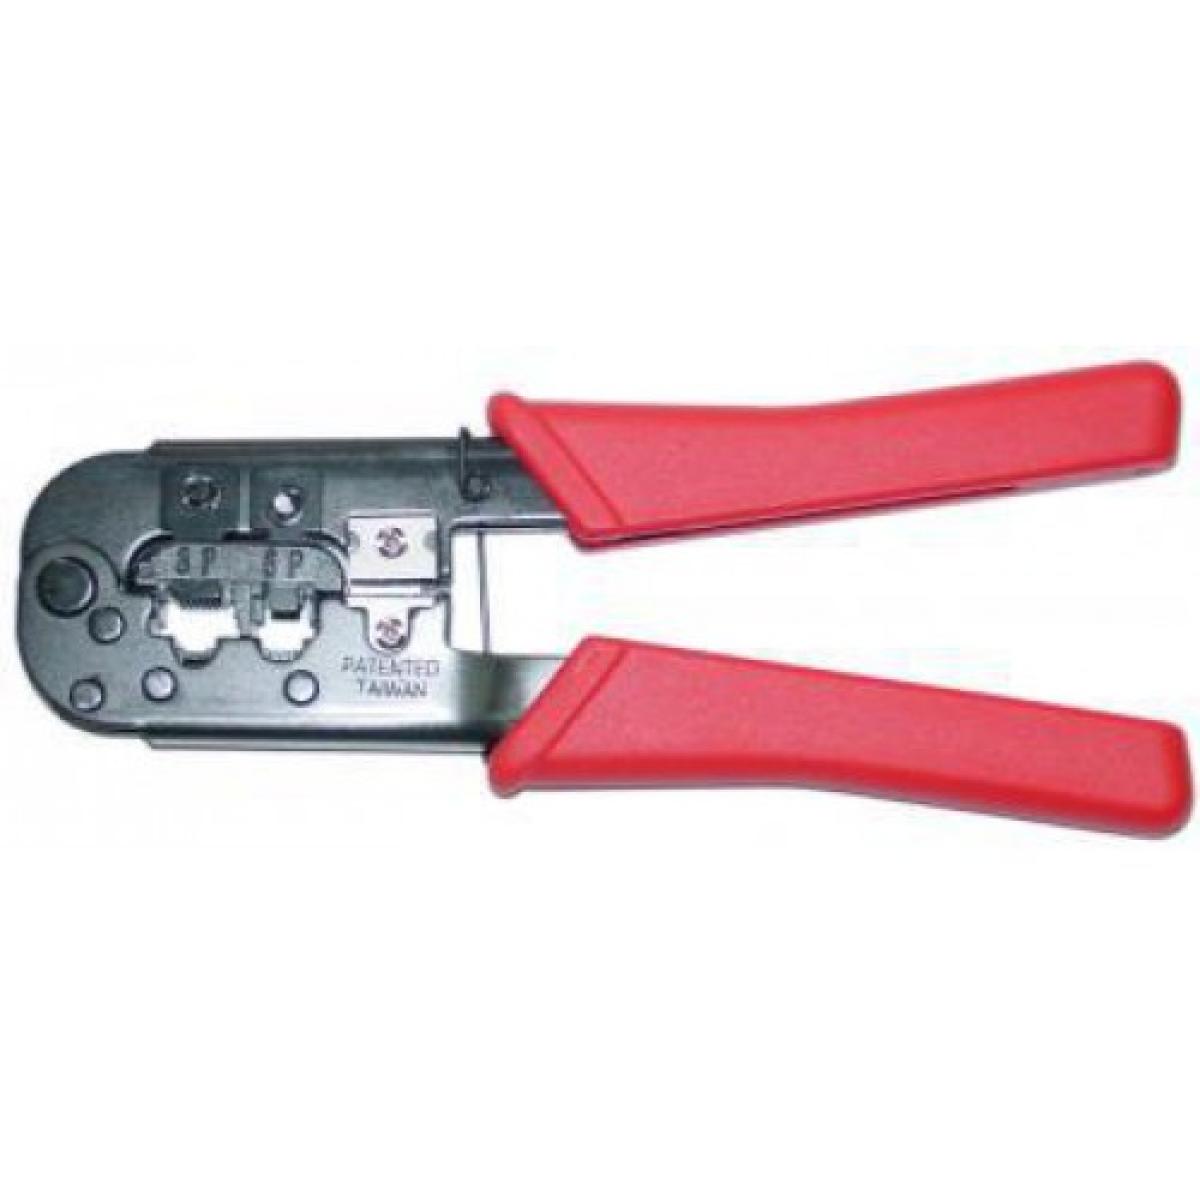 Crimping tool. Crimping Tool for rj11. Crimping Tool KUWES BHT 568 for rj45,rj12,rj11. Trakker Crimp Tool. Crimping Toolkit s-Tek 773314 rj45/rj11.